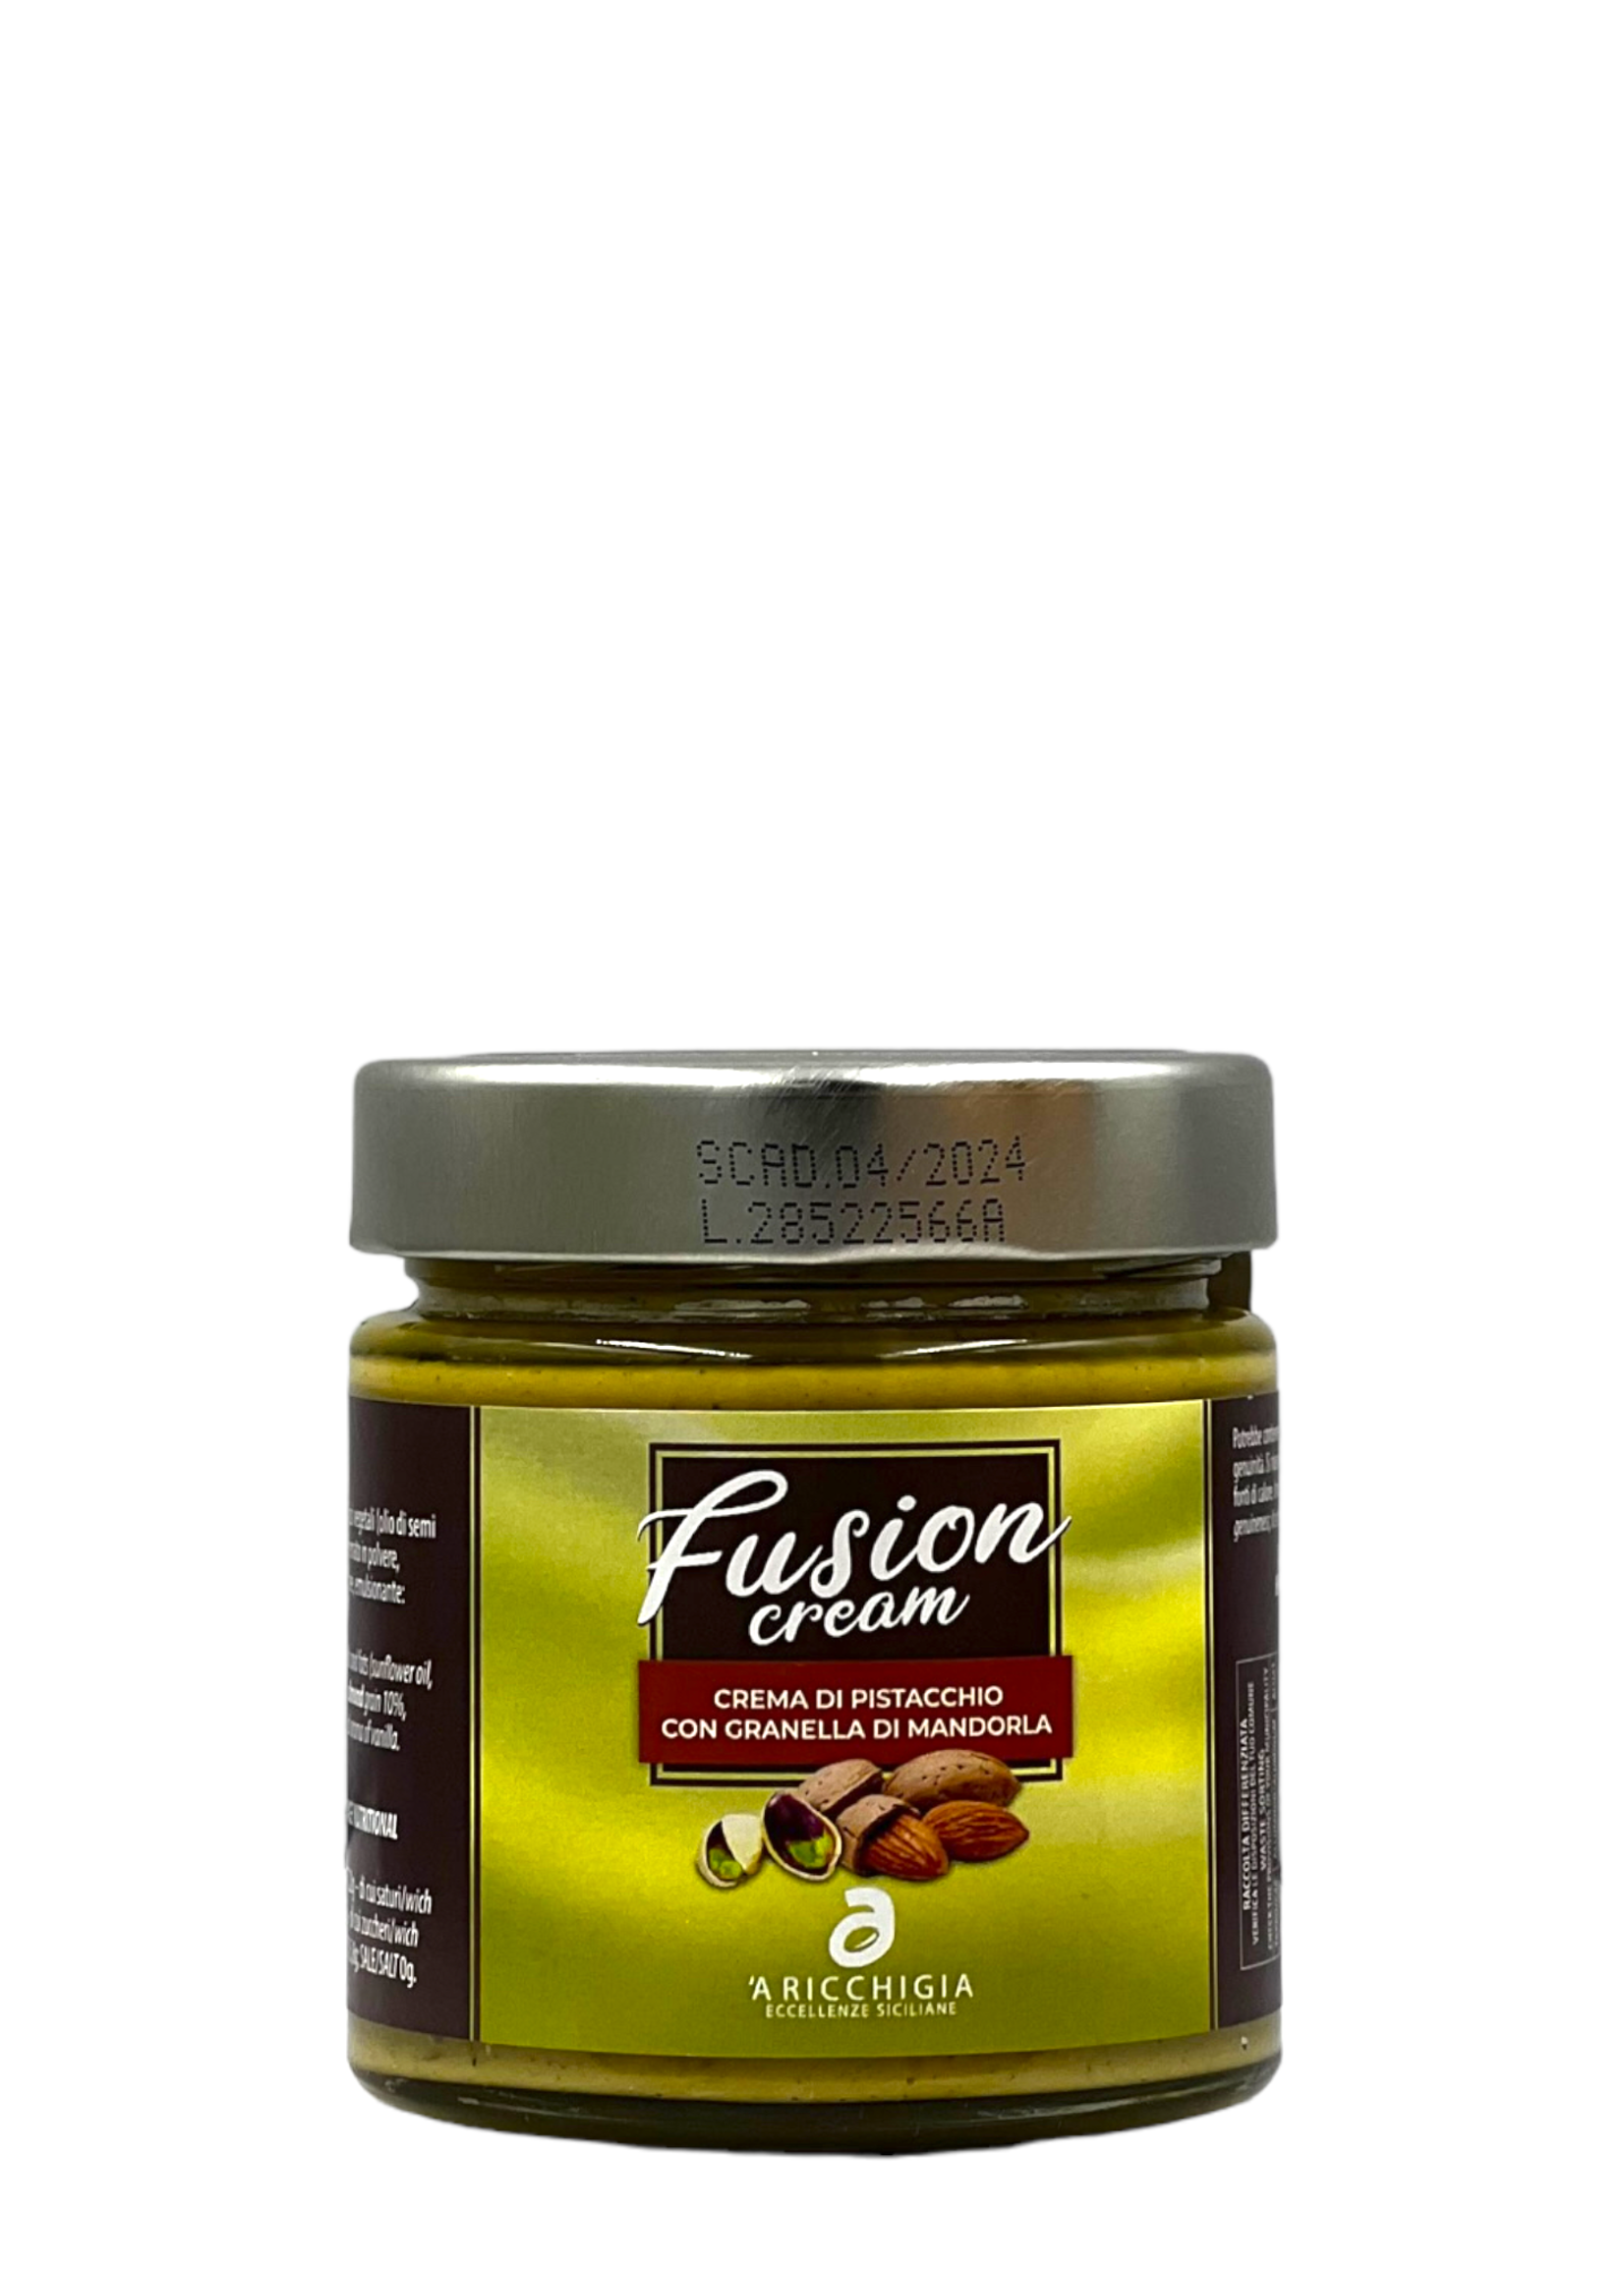 'A Ricchigia Fusion Crema di pistacchio di Bronte con granella di mandorla 190g - 'A Ricchigia